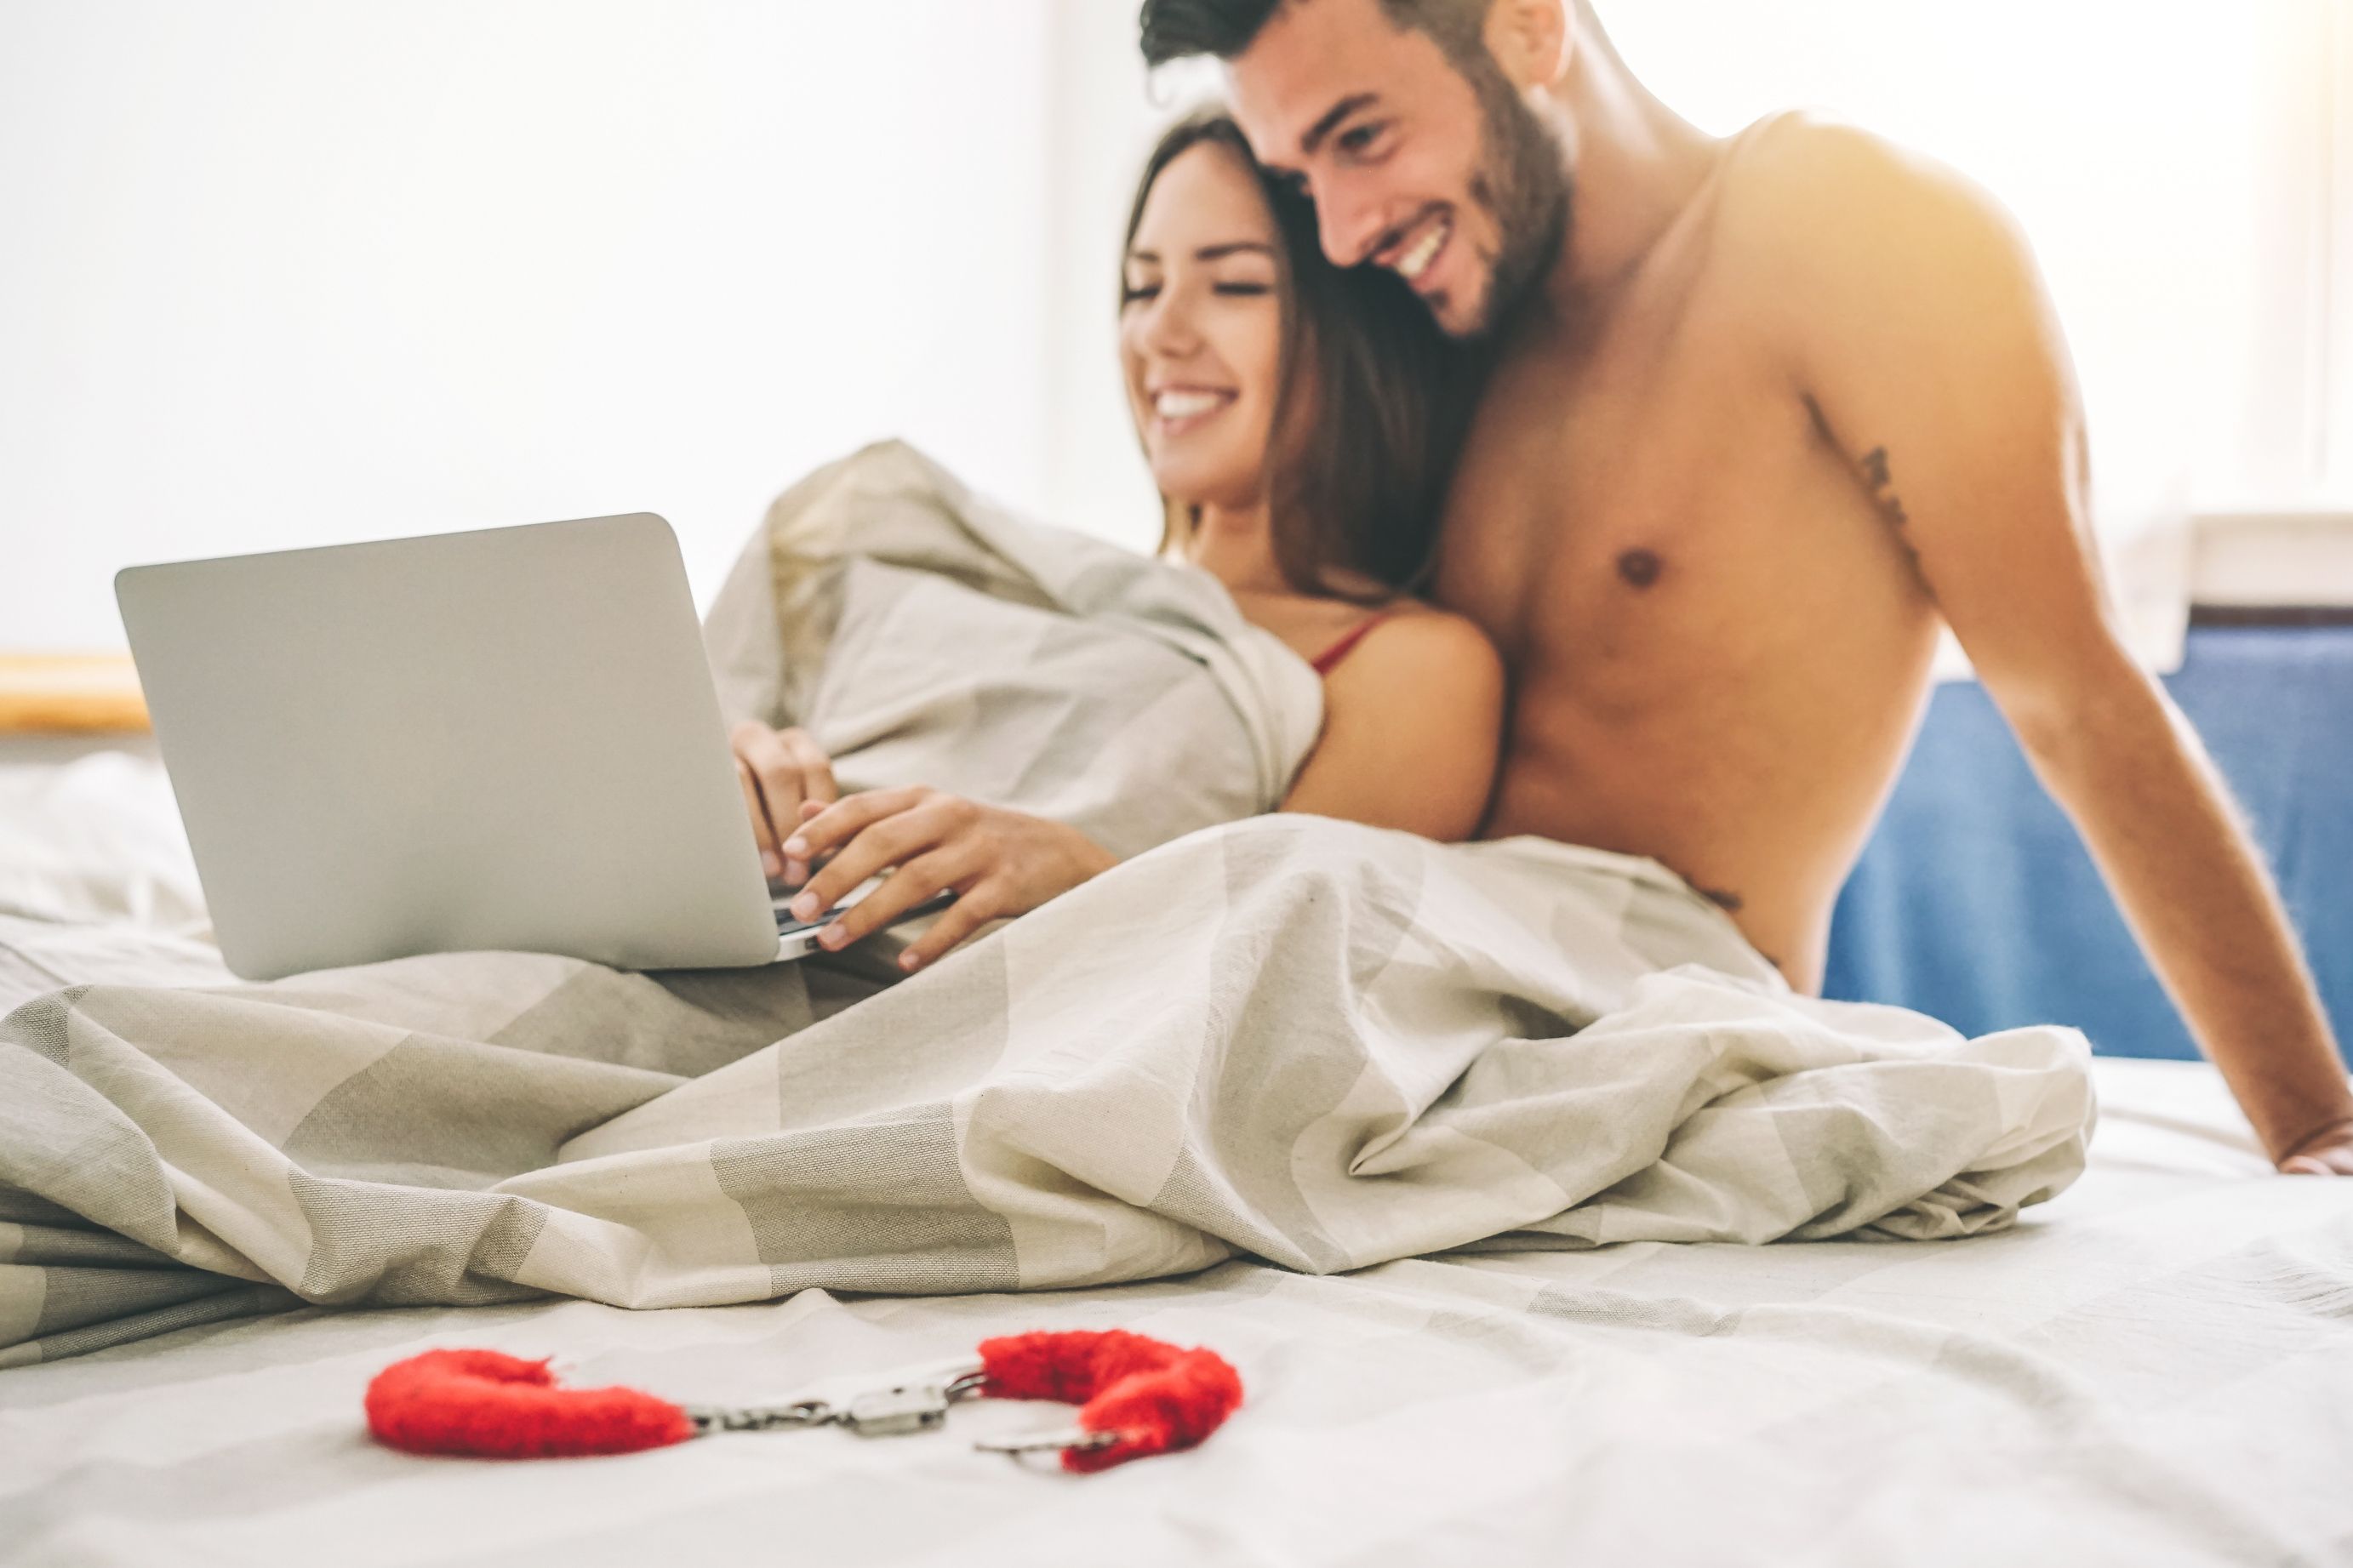 Un homme au lit avec une femme. | Source : Shutterstock